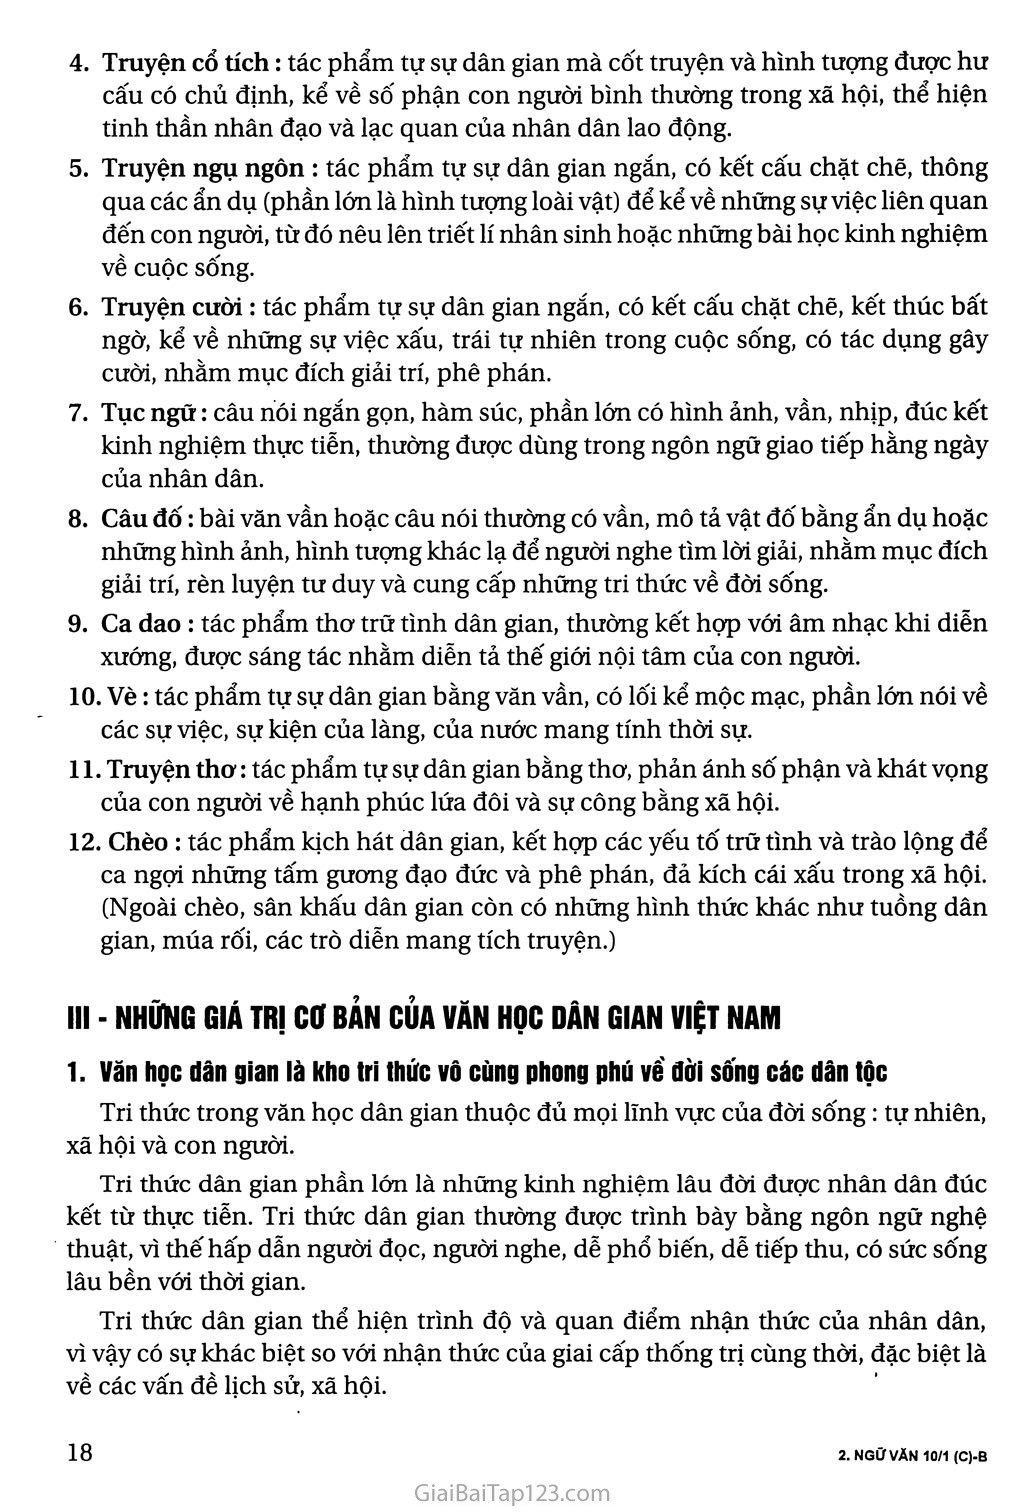 Khái quát văn học dân gian Việt Nam trang 3